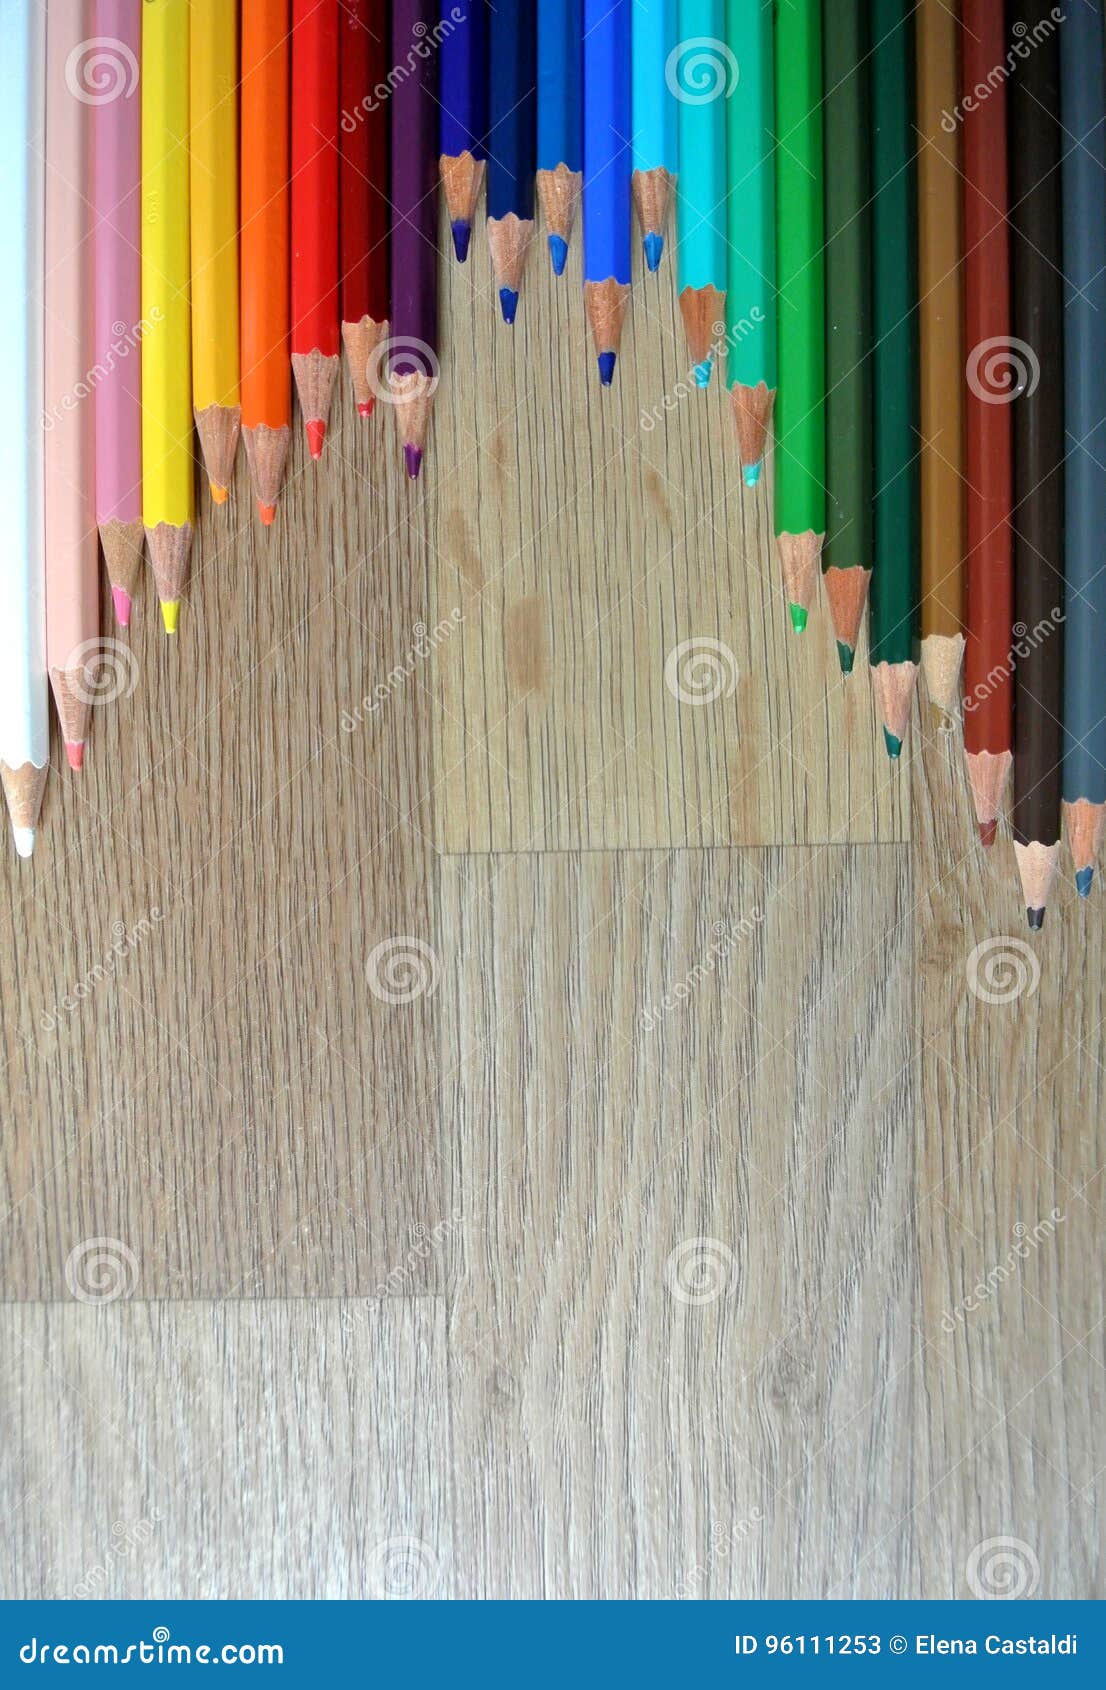 χρωματισμένα μολύβια. Η σύνθεση των χρωματισμένων μολυβιών